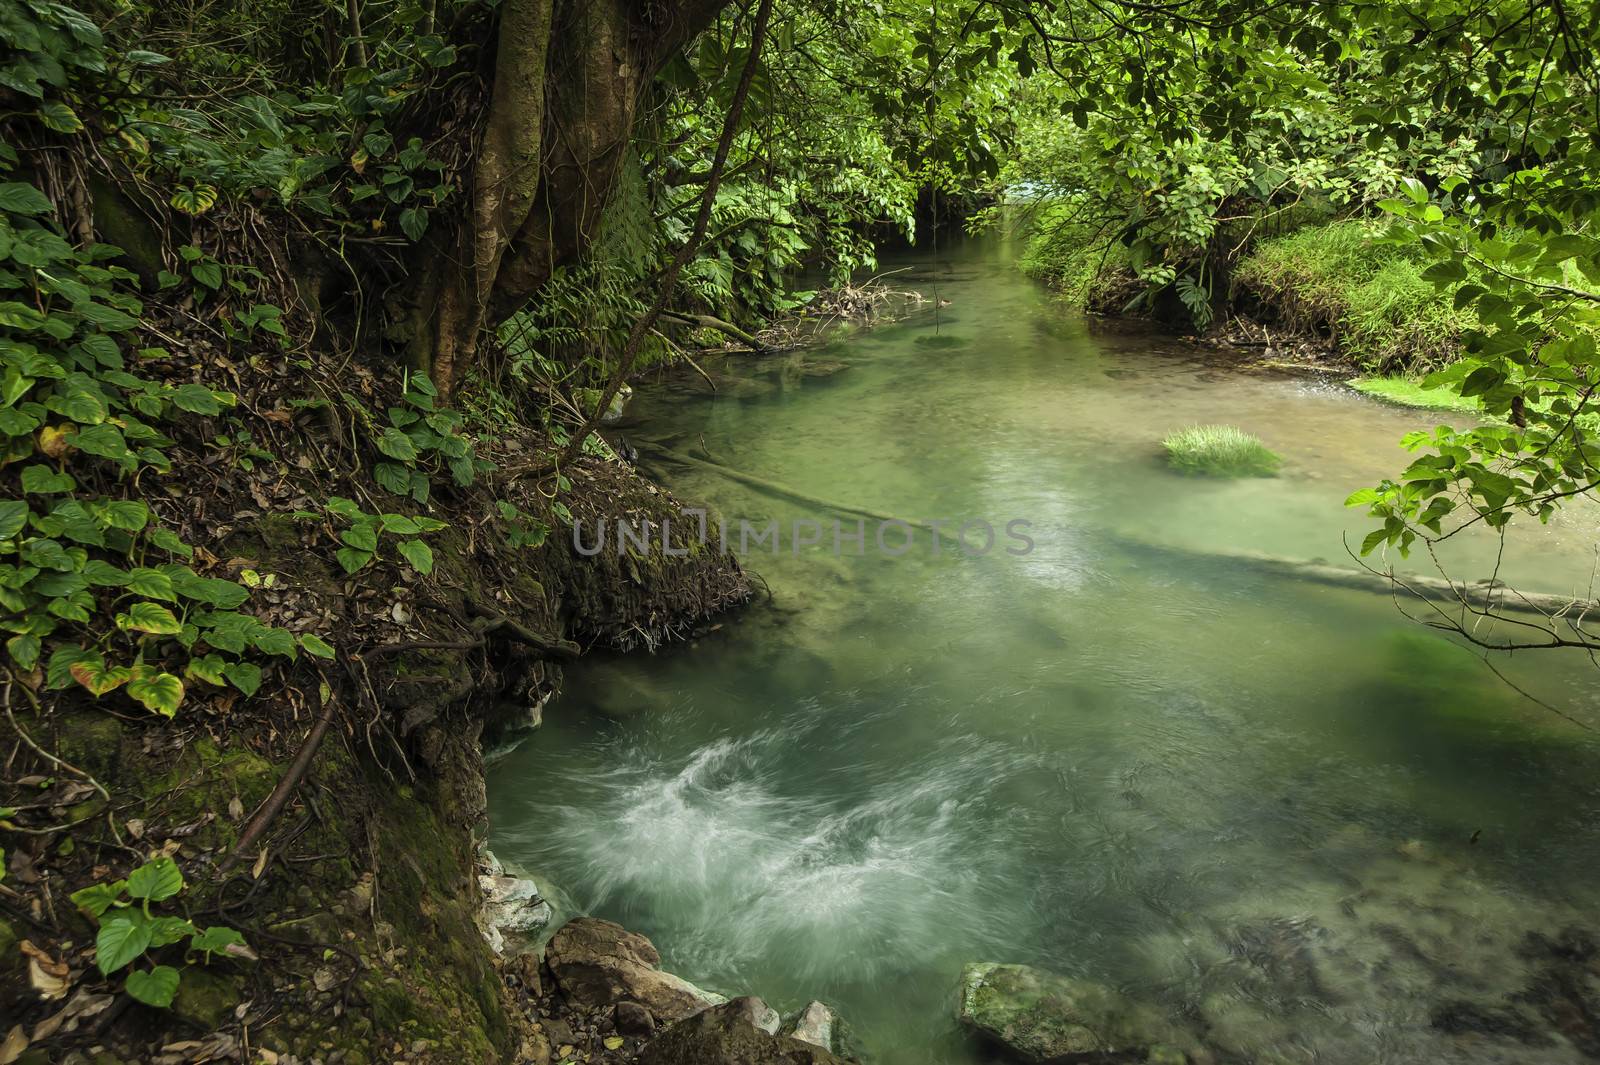 Borbollone or bubbling hot spring in the rio Celeste in Costa Rica.